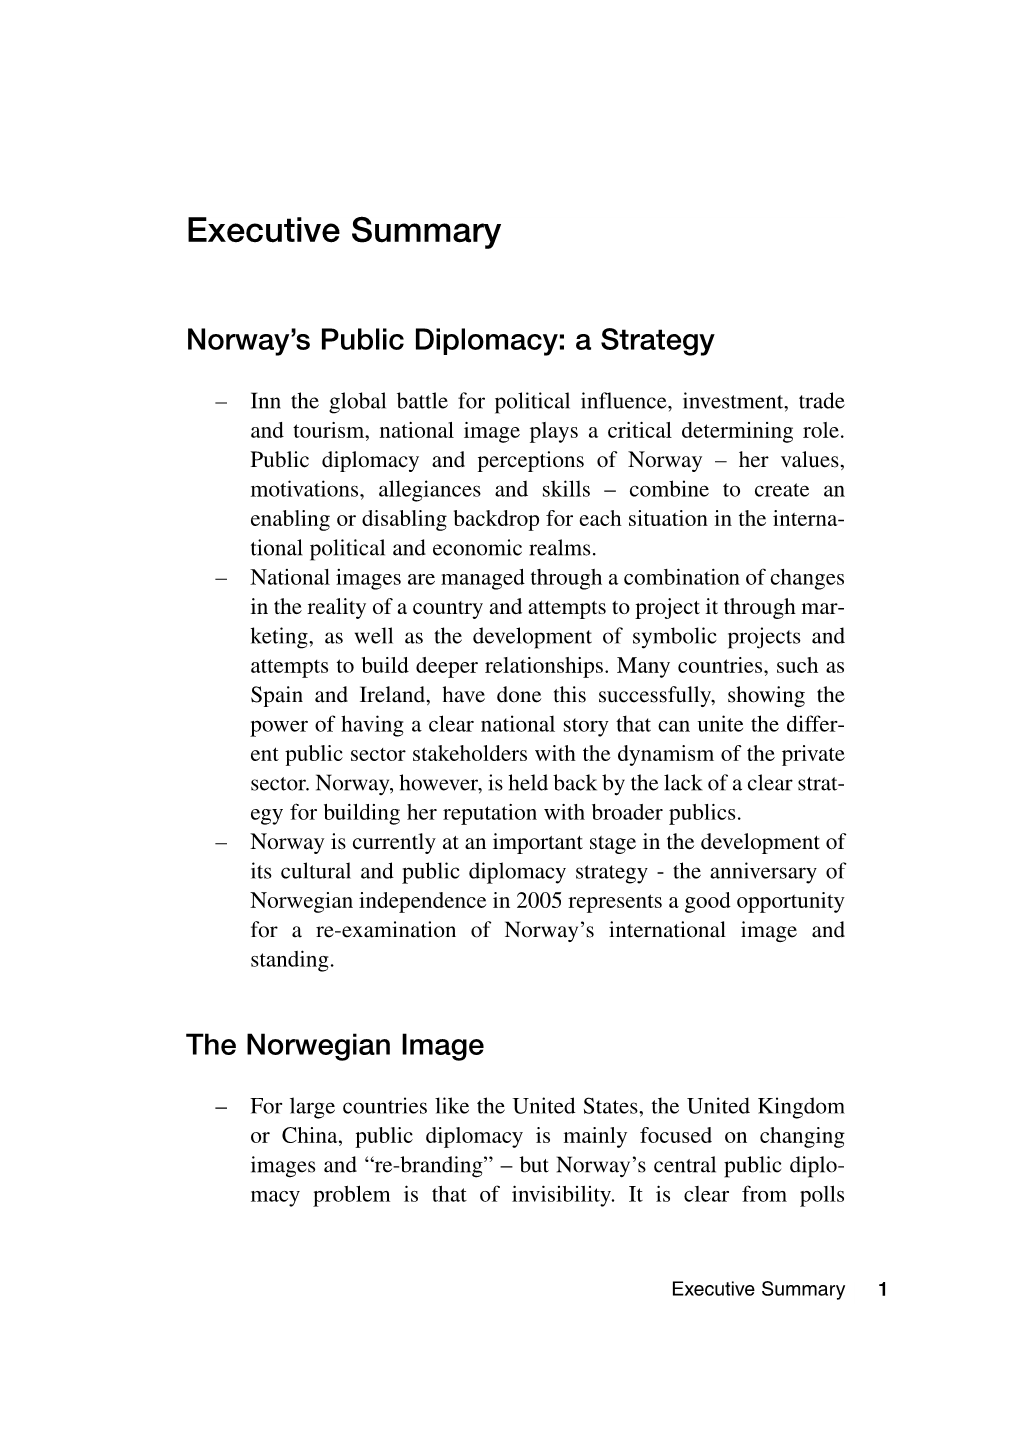 Norwegian Public Diplomacy Exesummary.Qxd 09/06/03 3:54 PM Page 3